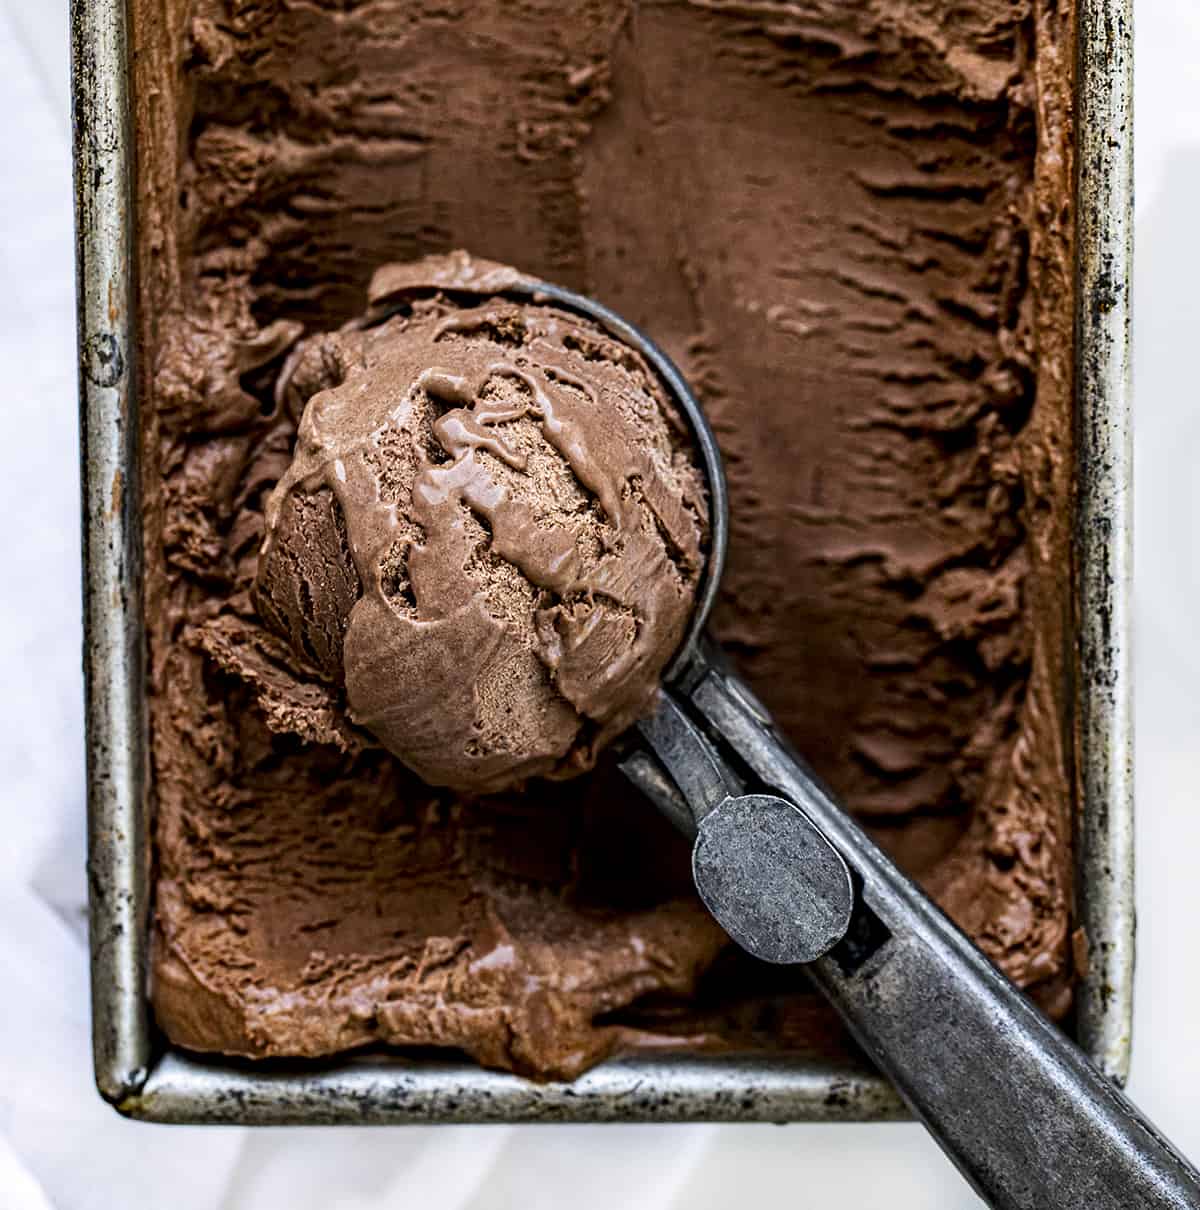 非常接近的一勺No-Churn巧克力冰淇淋。